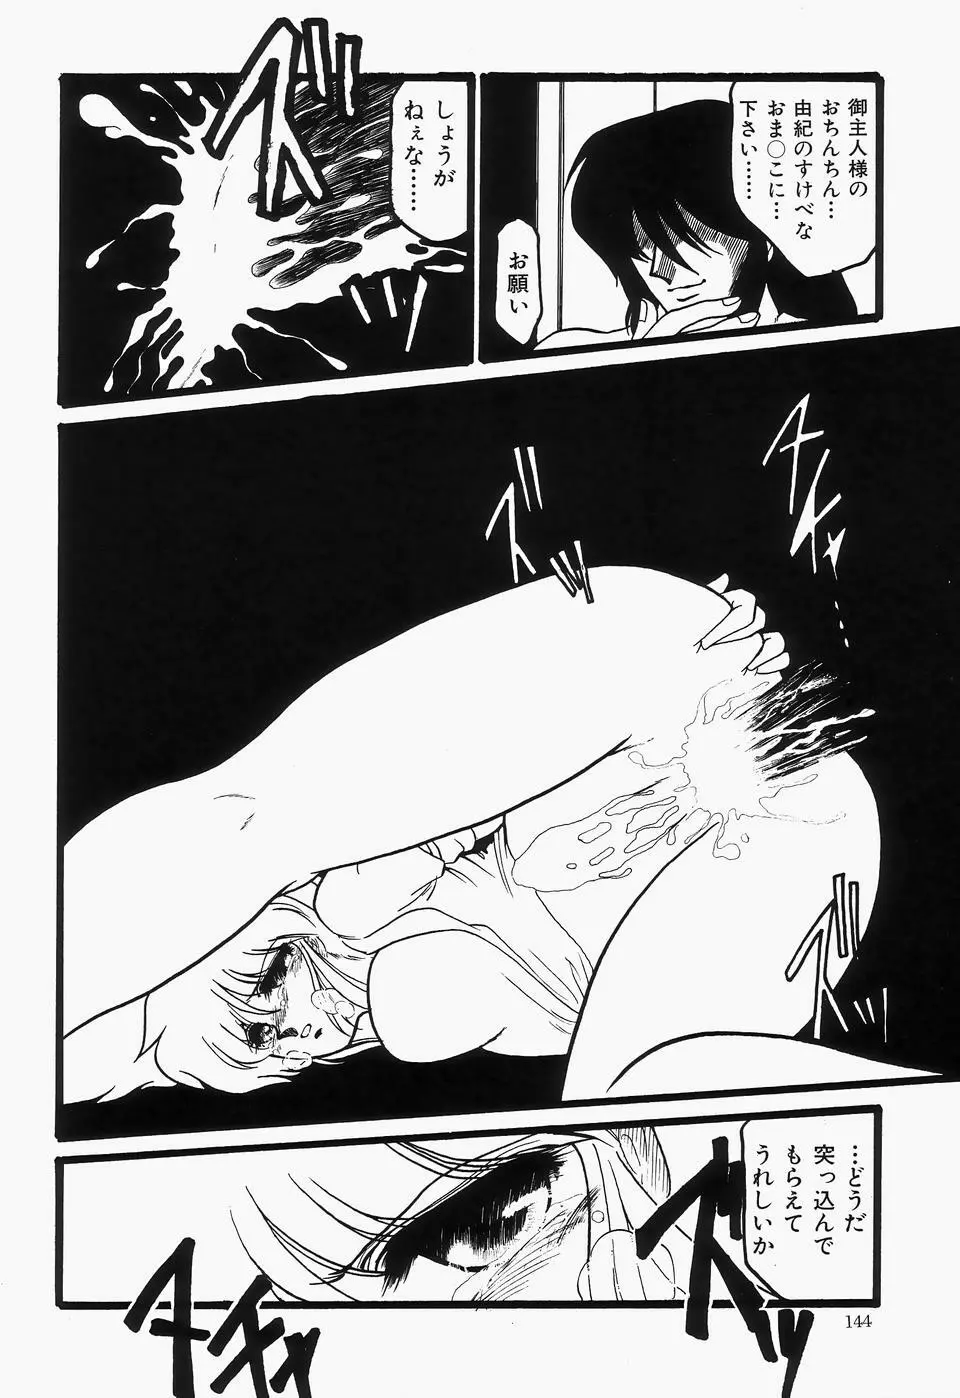 チェリームーンSUPER！ Vol.1 146ページ